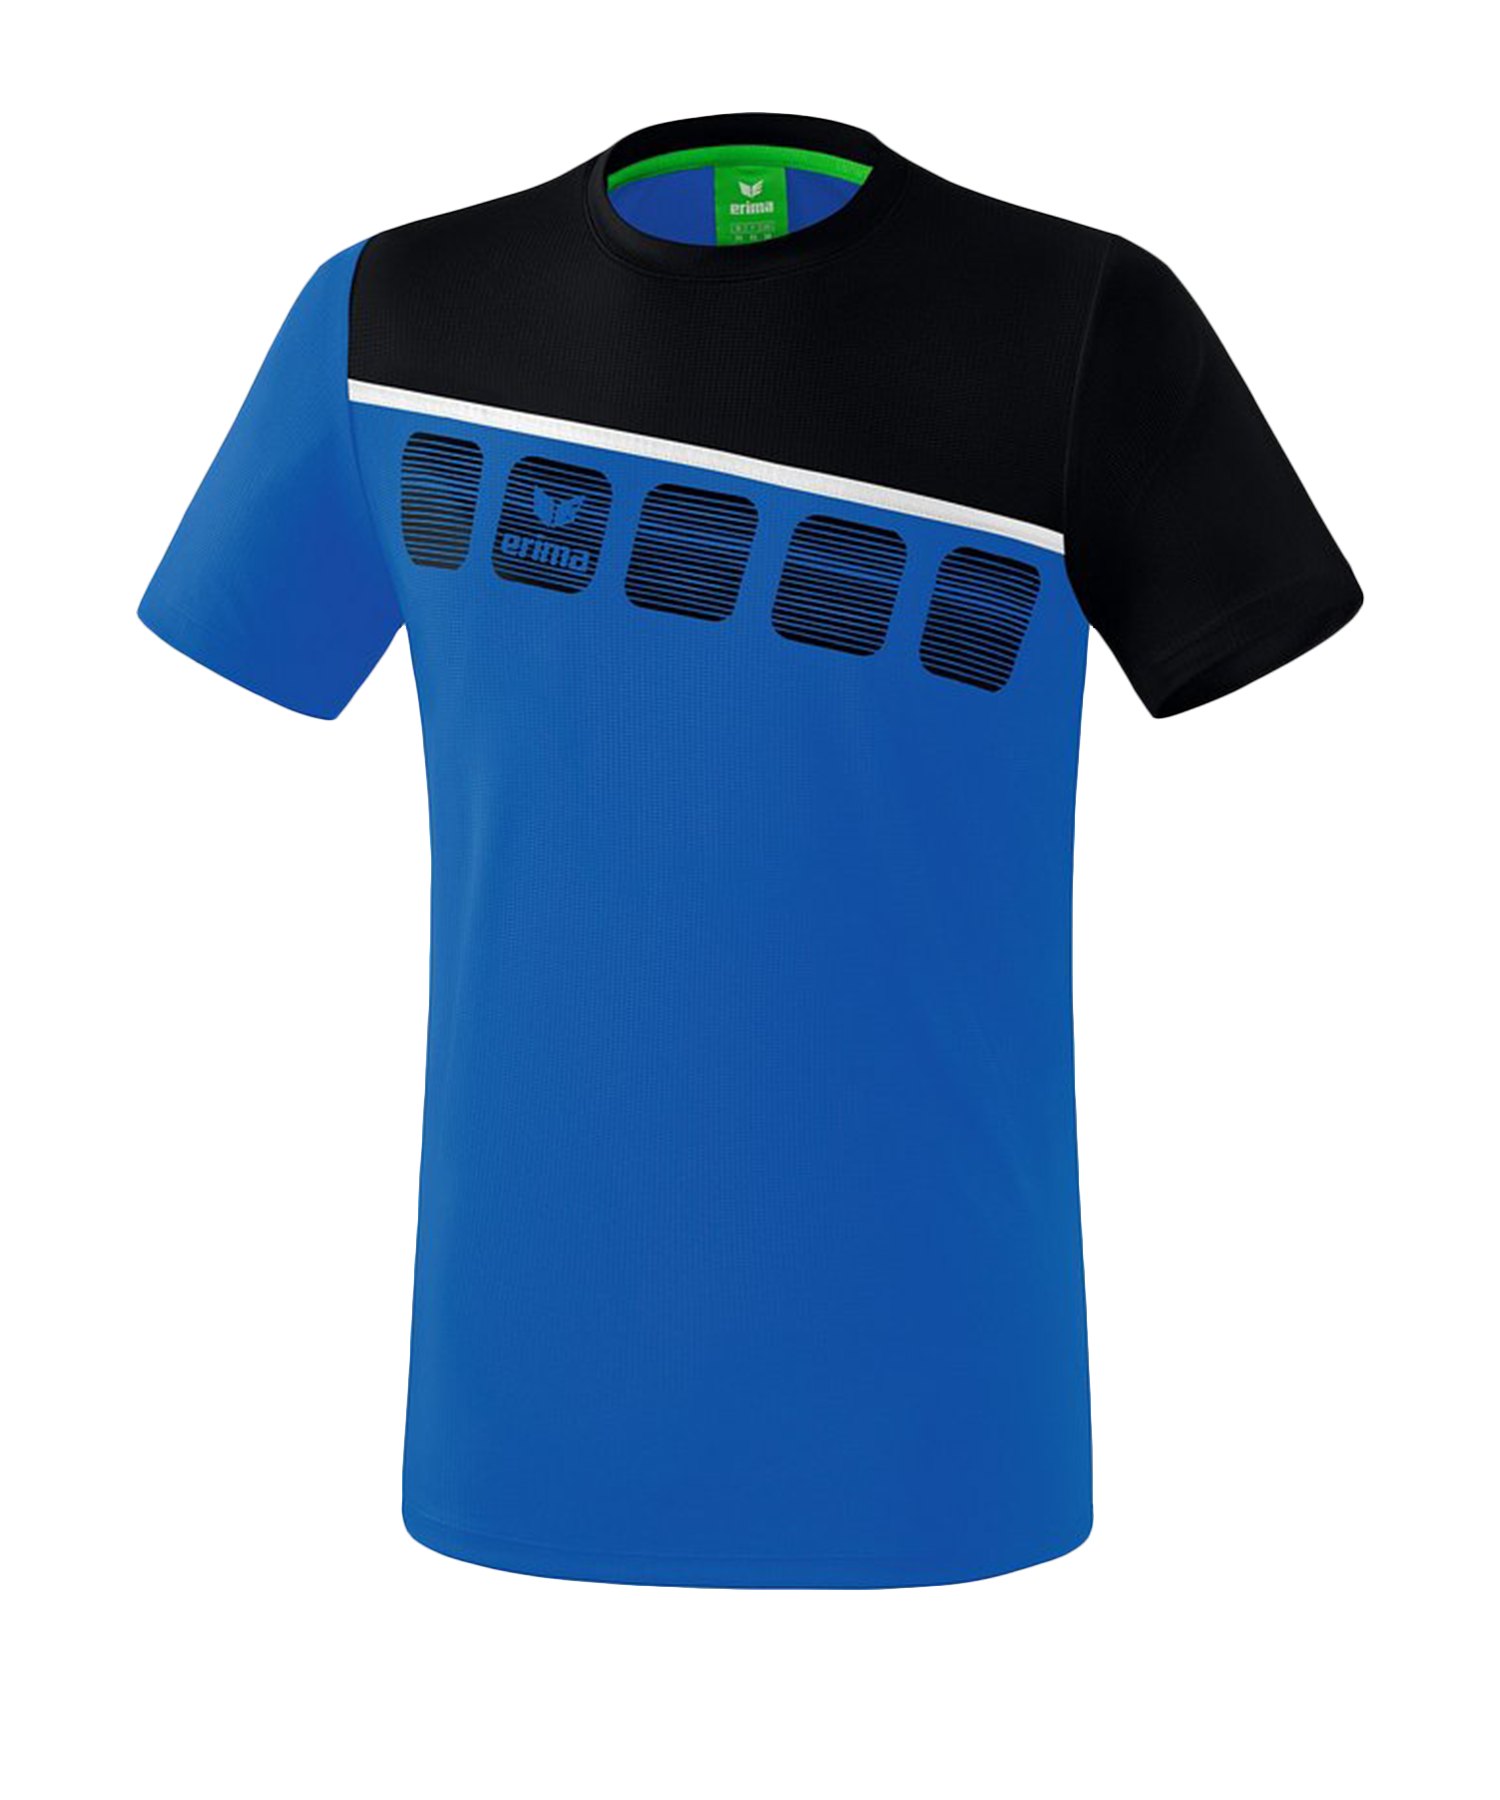 Erima 5-C T-Shirt Blau Schwarz - Blau